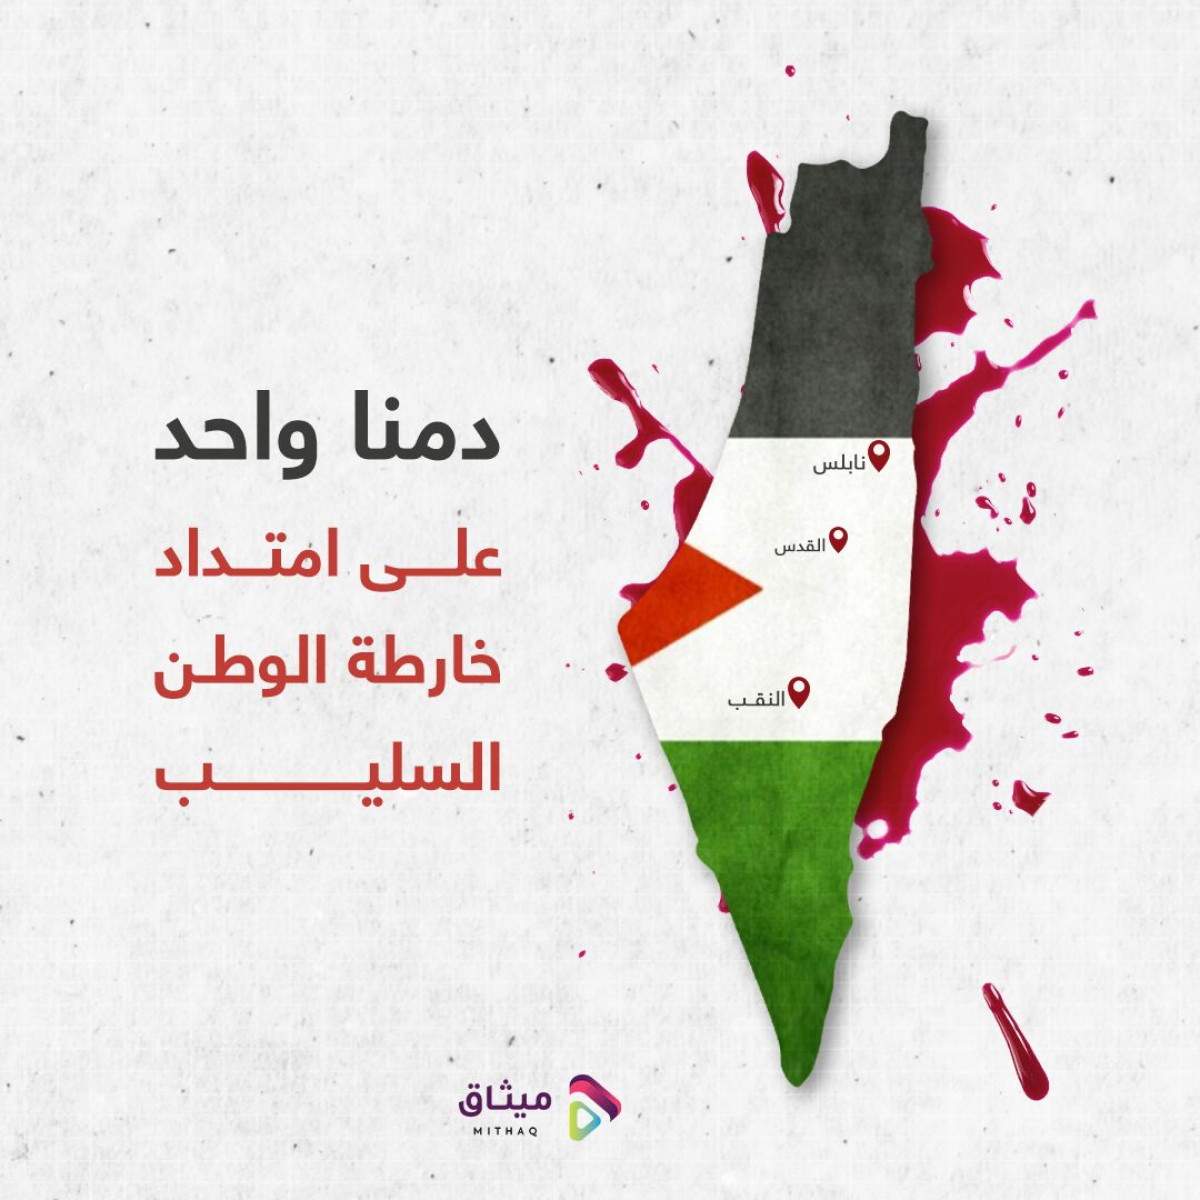 الدم الفلسطيني ينزف من جديد على امتداد فلسطين